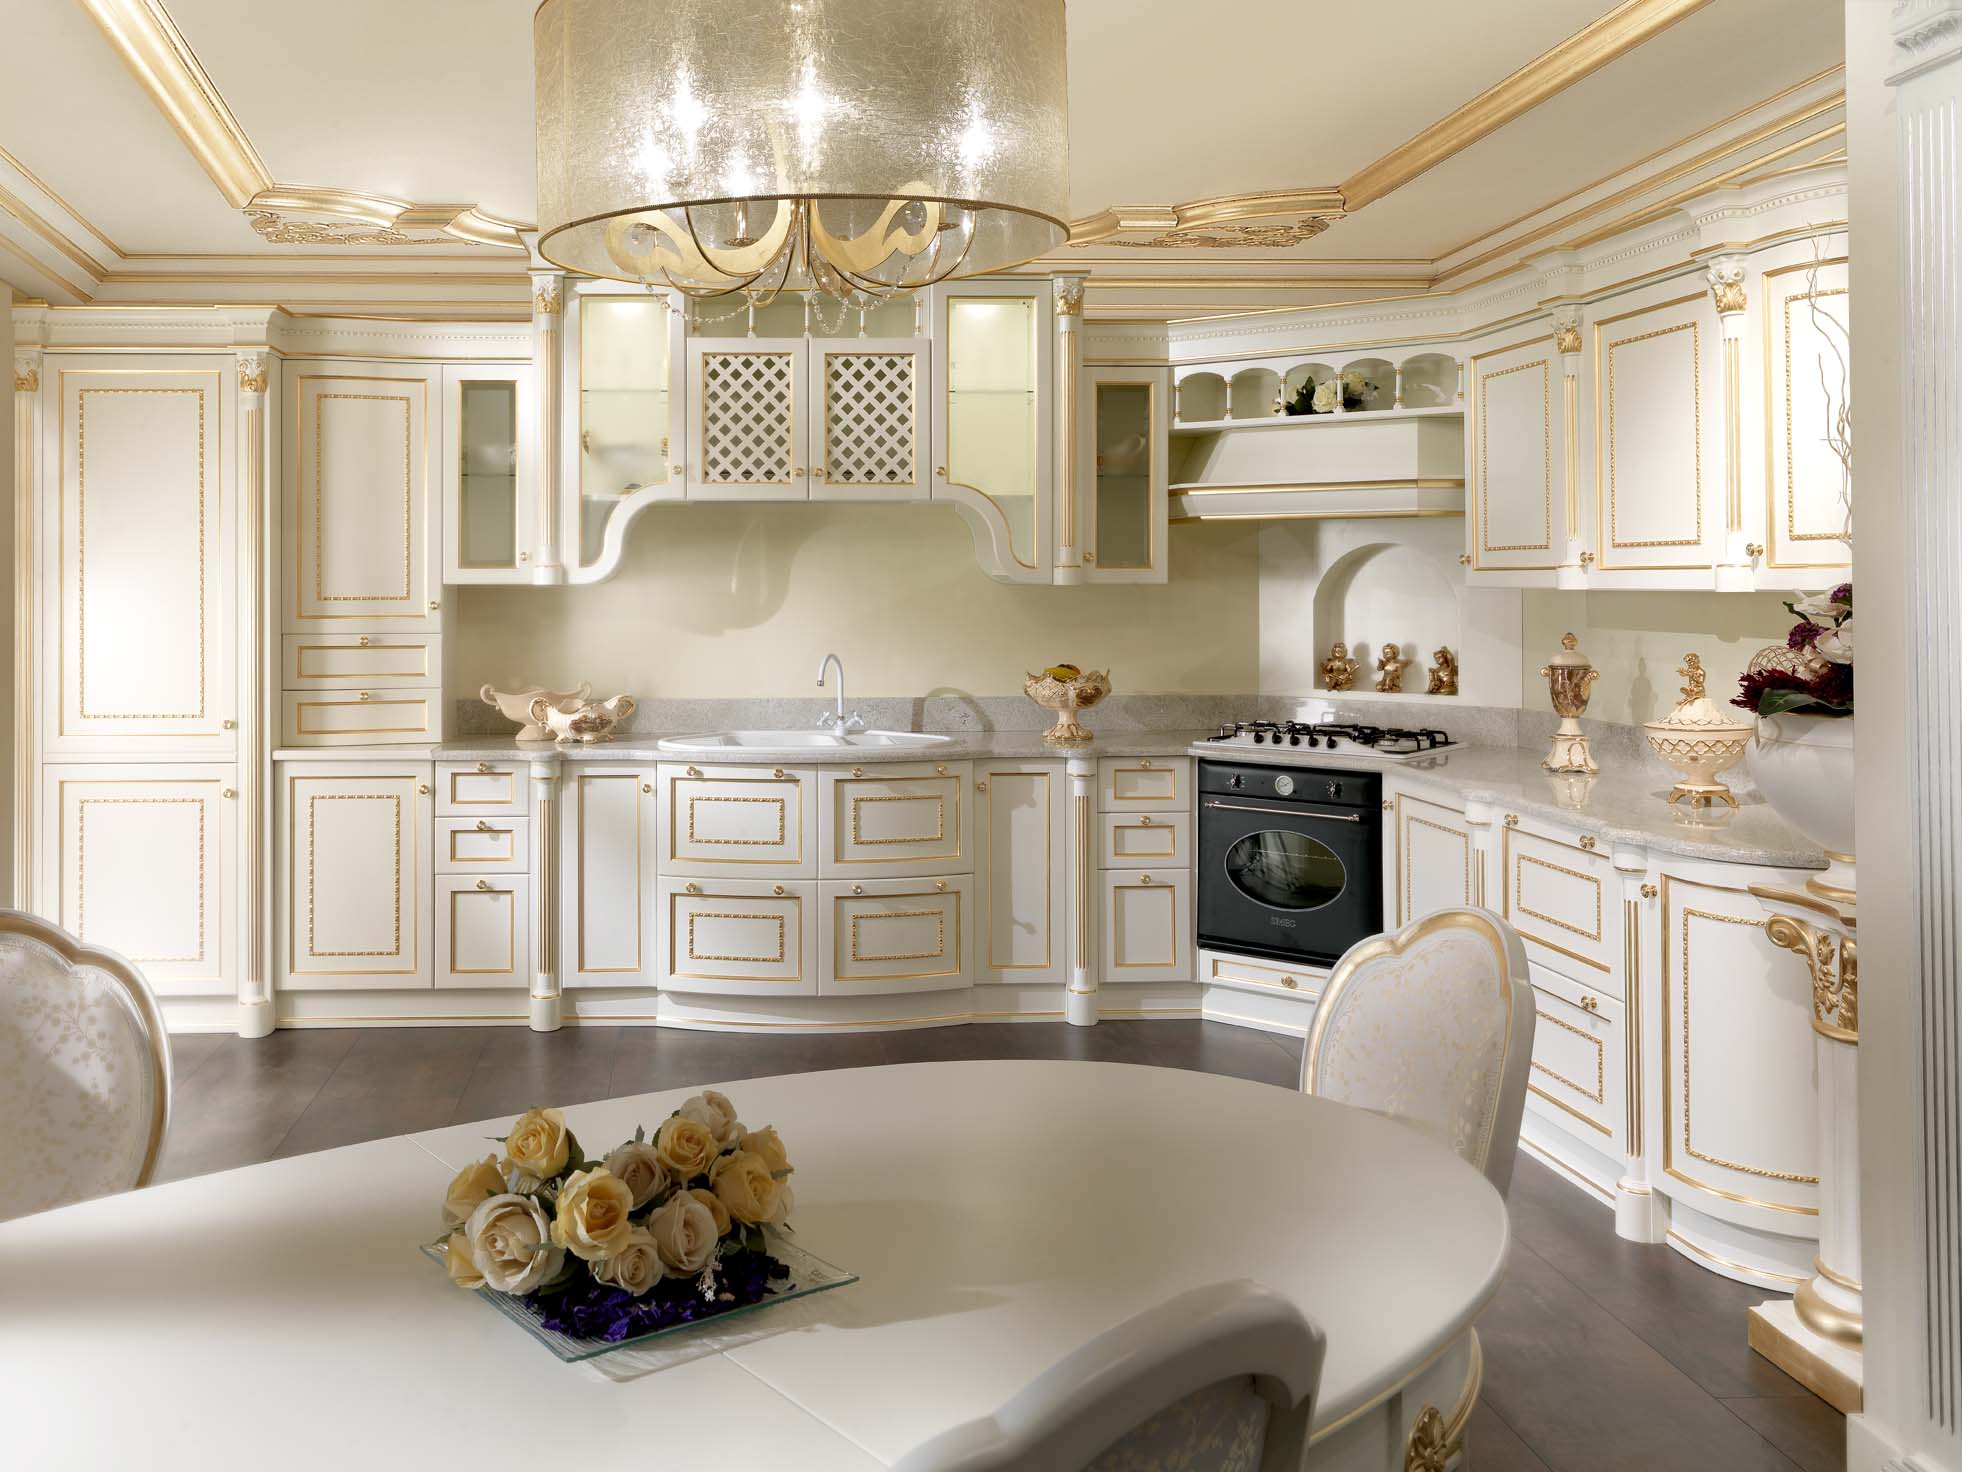 Nội thất nhà bếp màu trắng với các chi tiết mạ vàng.